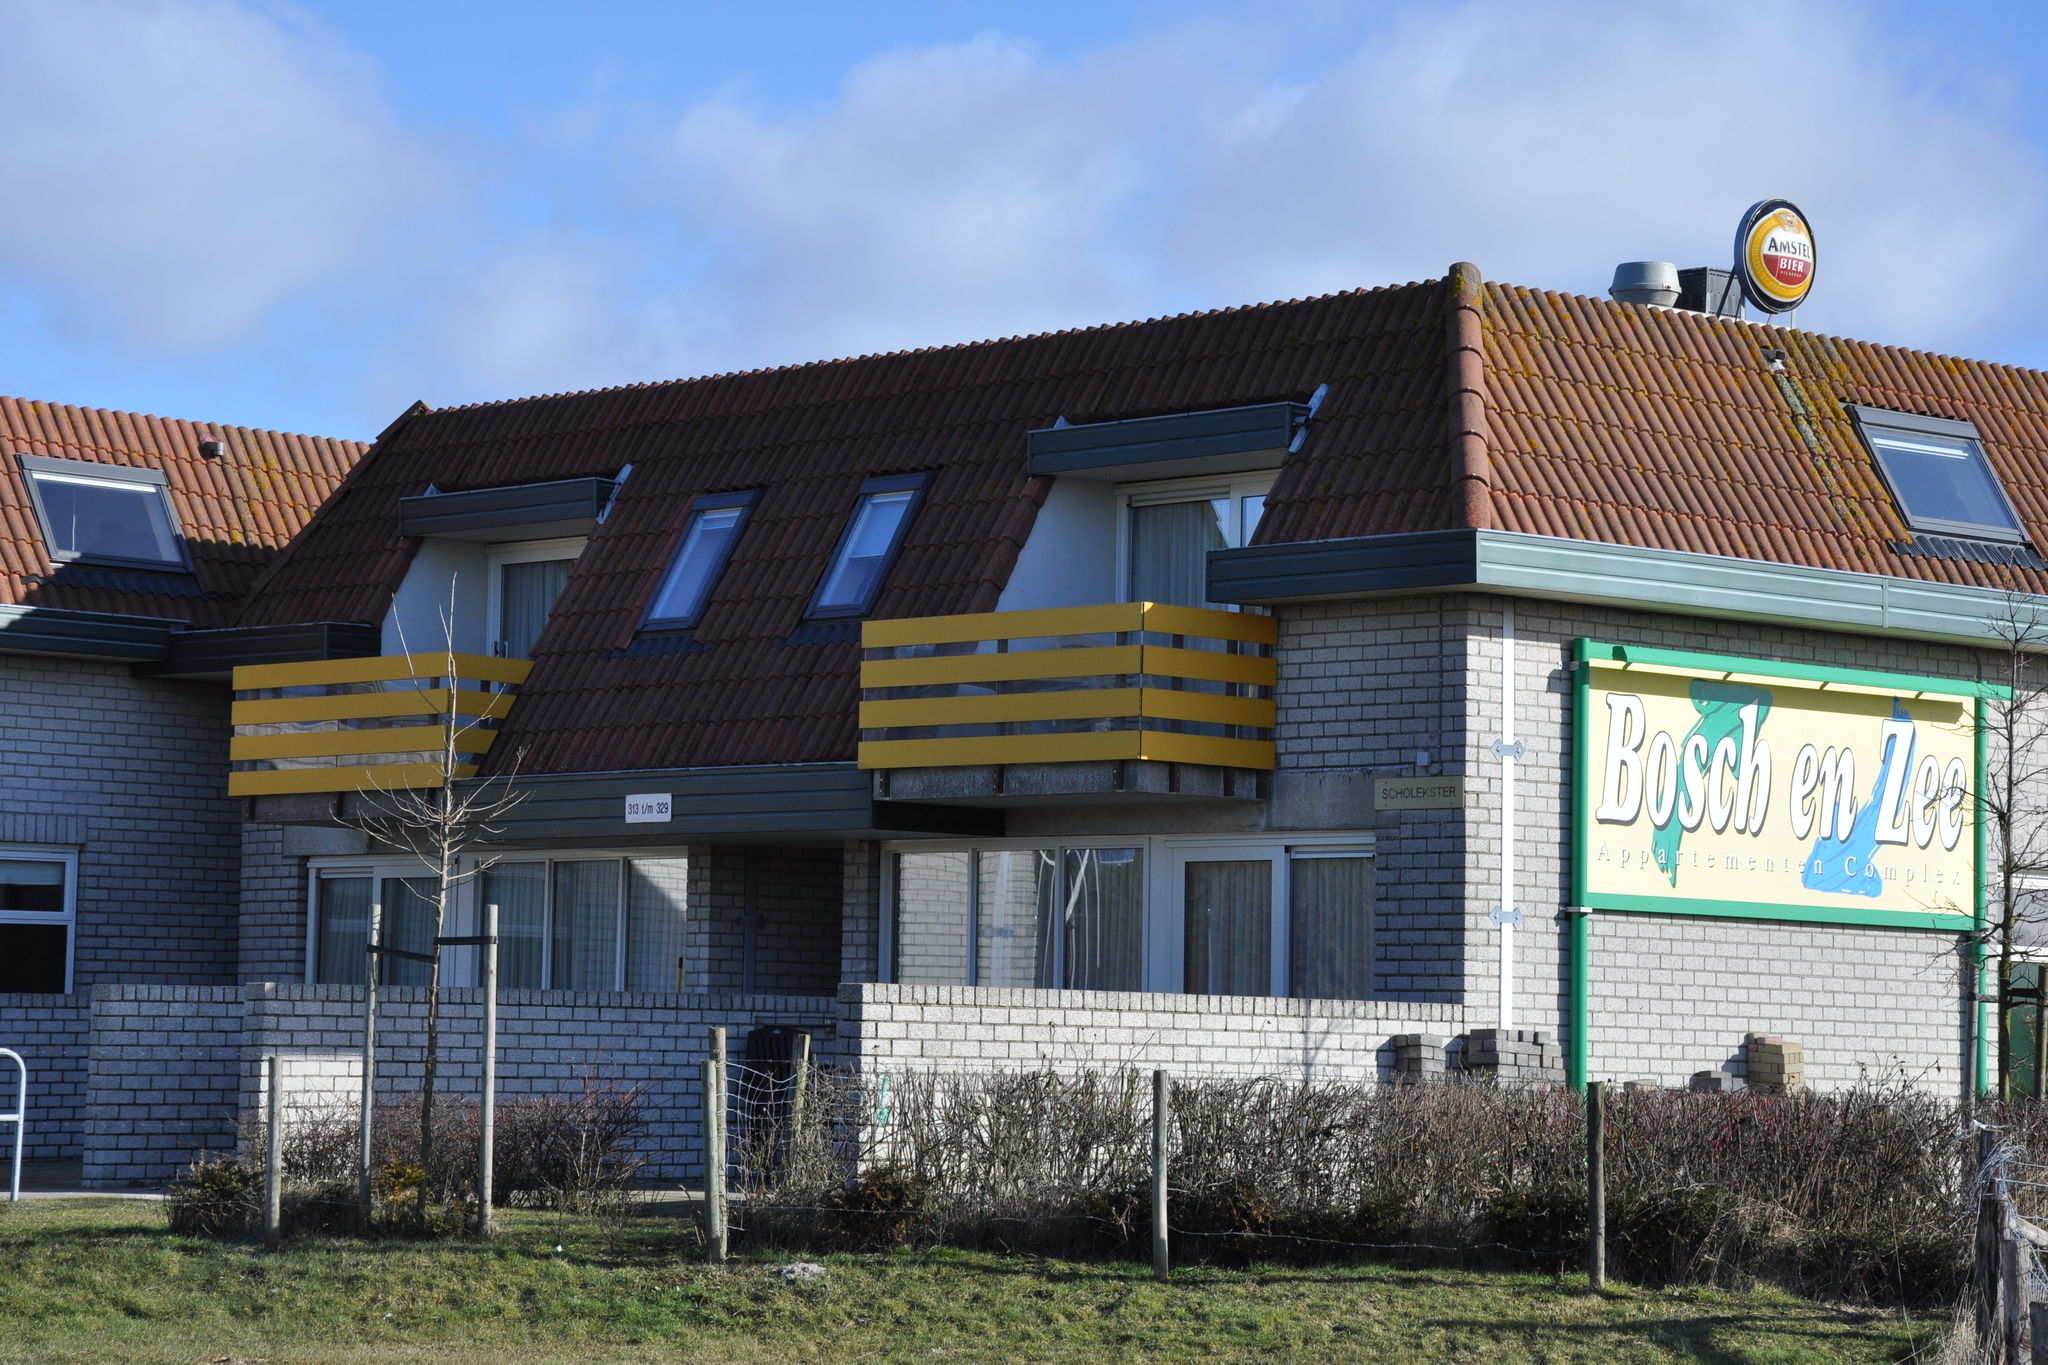 Gerestyld appartement niet ver van strand en zee op Texel